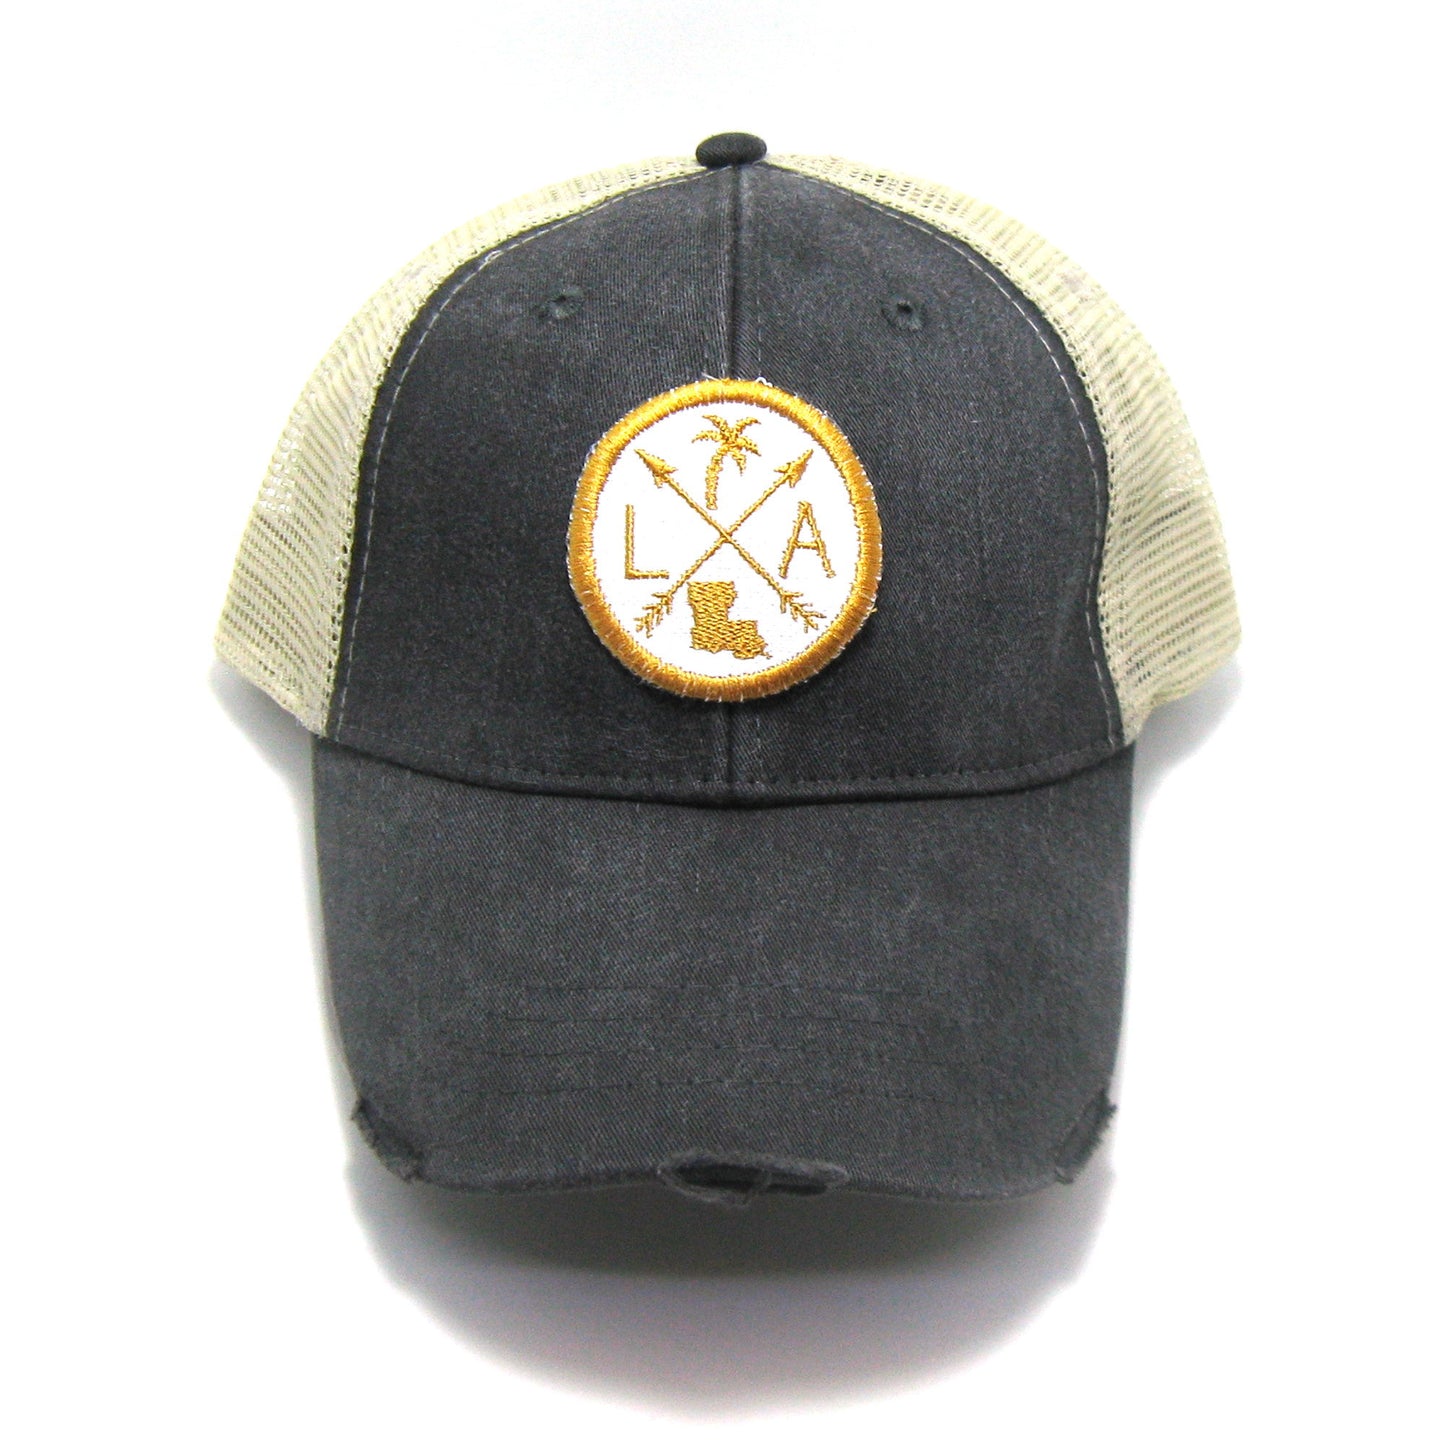 Louisiana Hat - Distressed Snapback Trucker Hat - Louisiana Arrow Compass